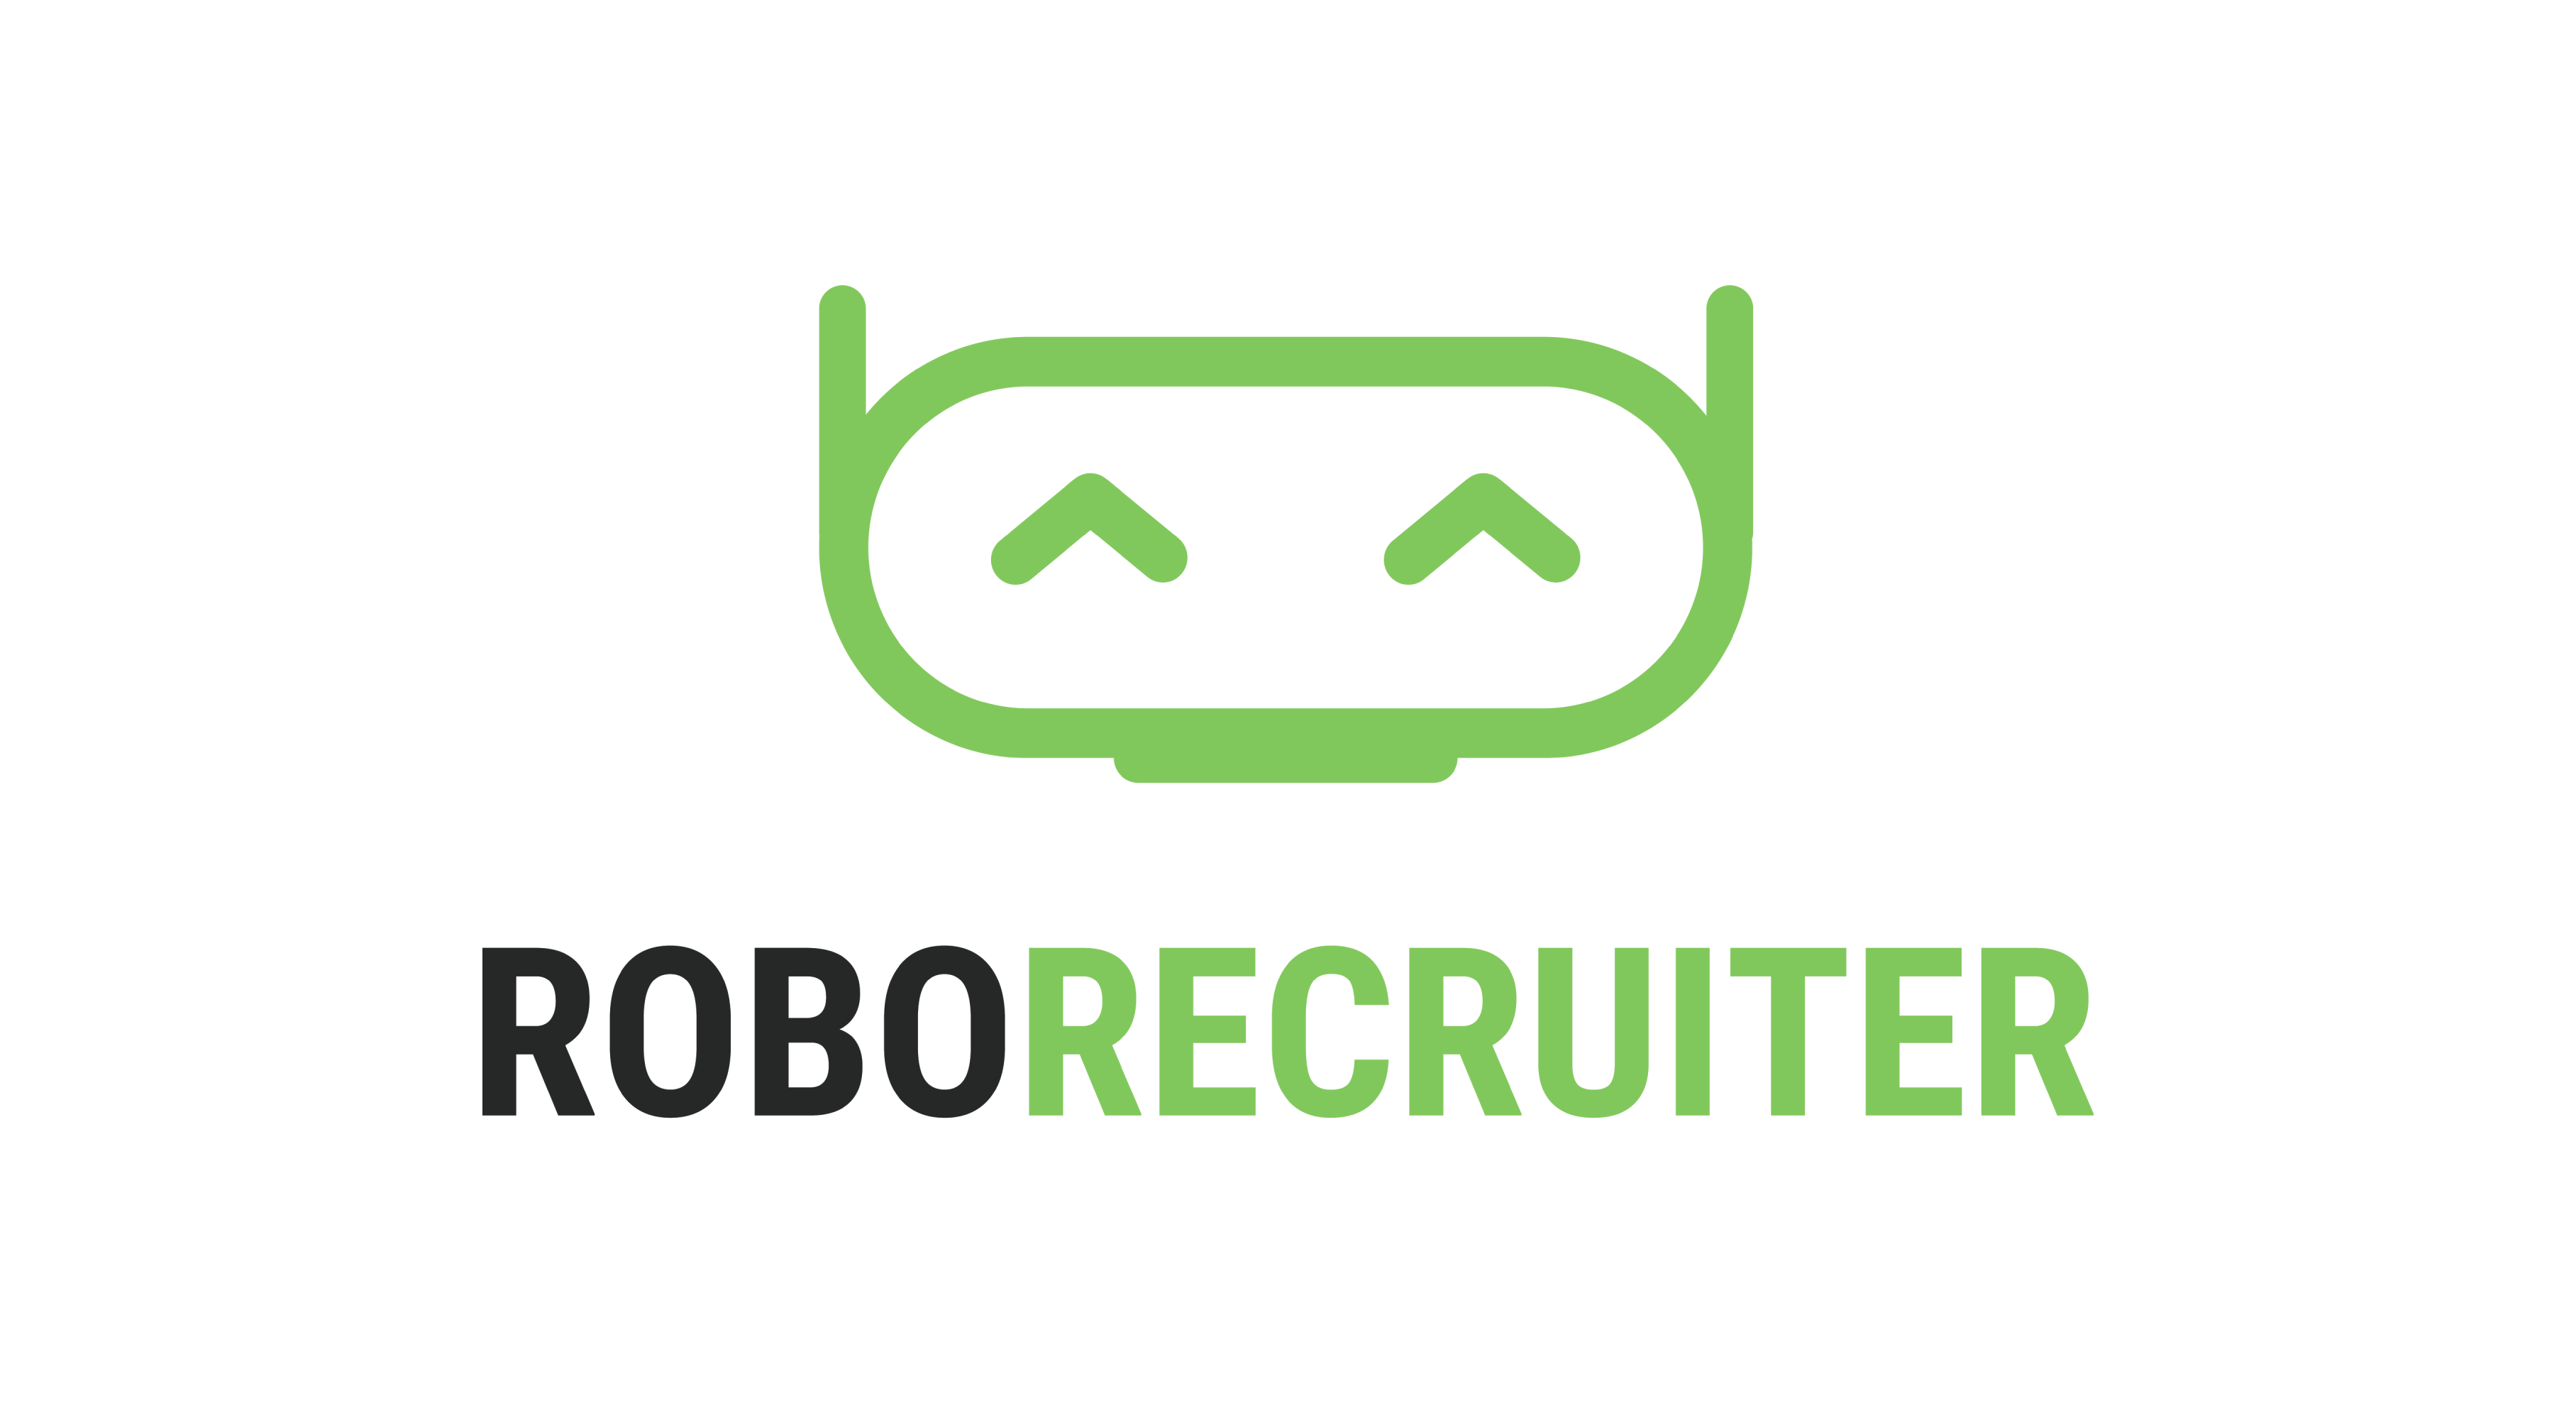 RoboRecruiter logo